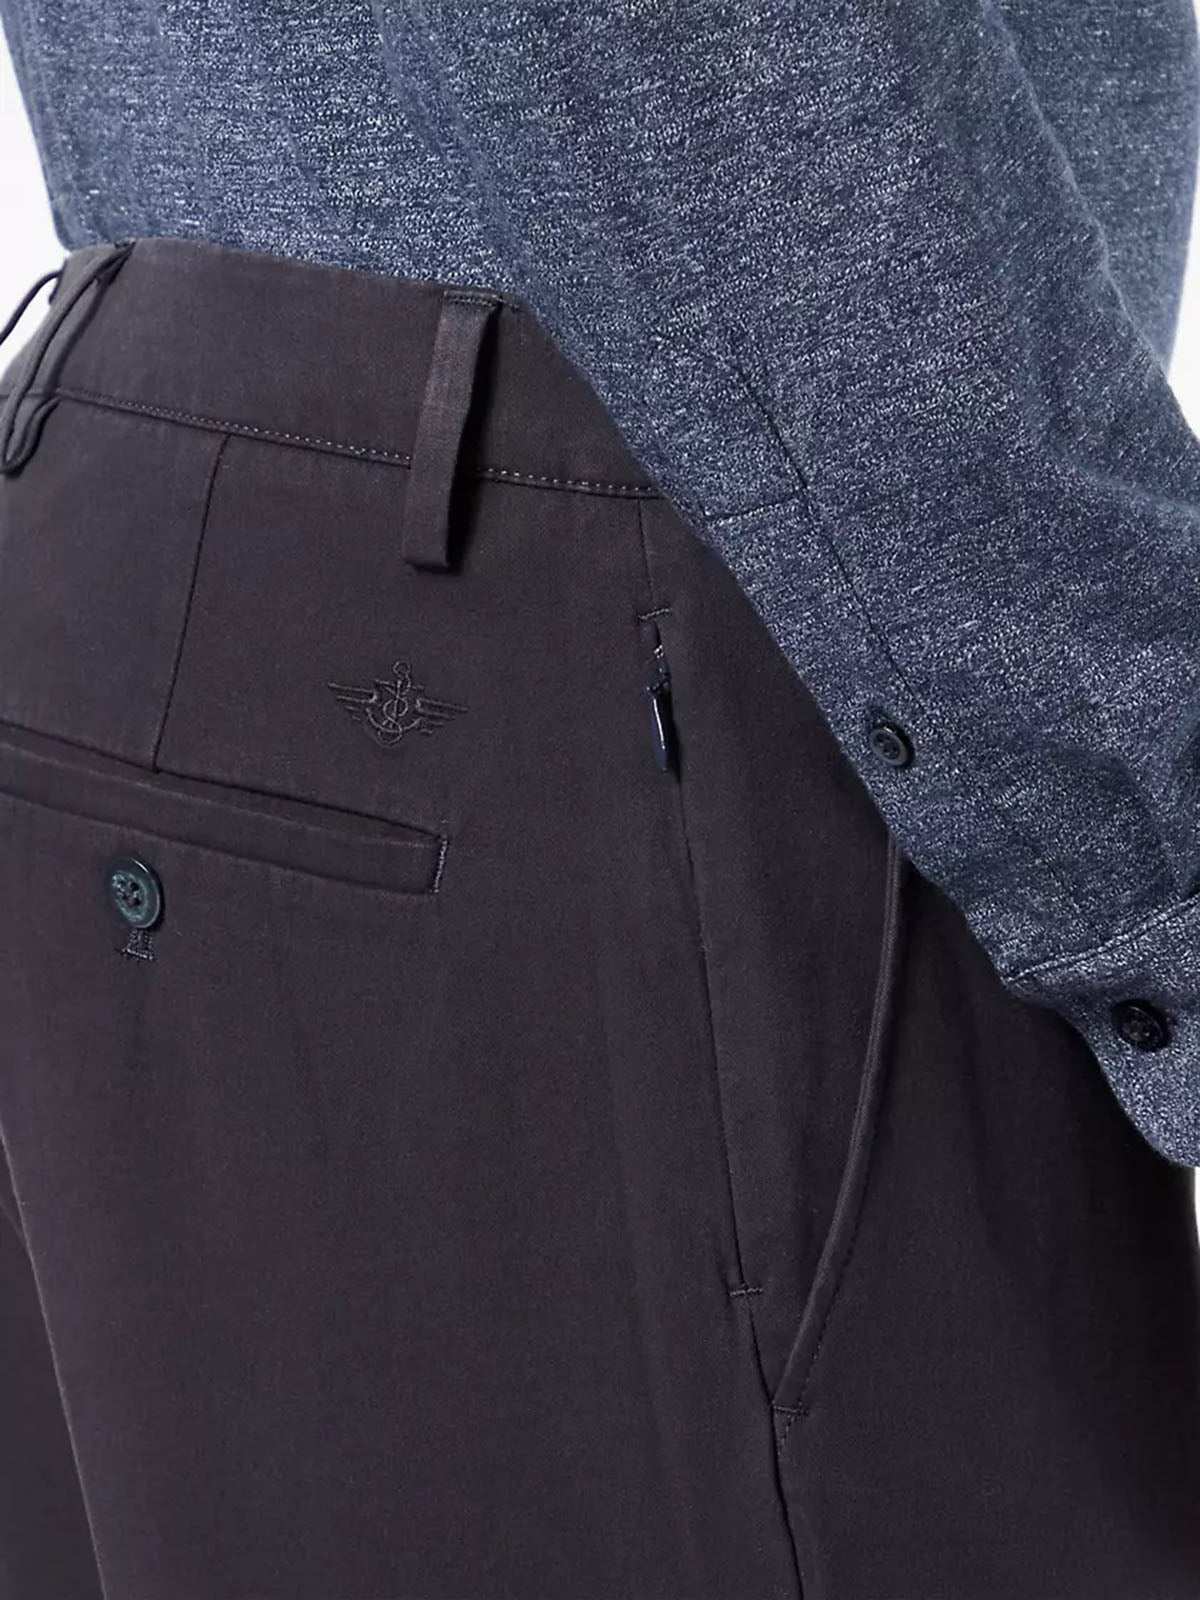 Pantaloni Uomo Dockers - Tapered Fit Smart 360 Flex Chino - Blu